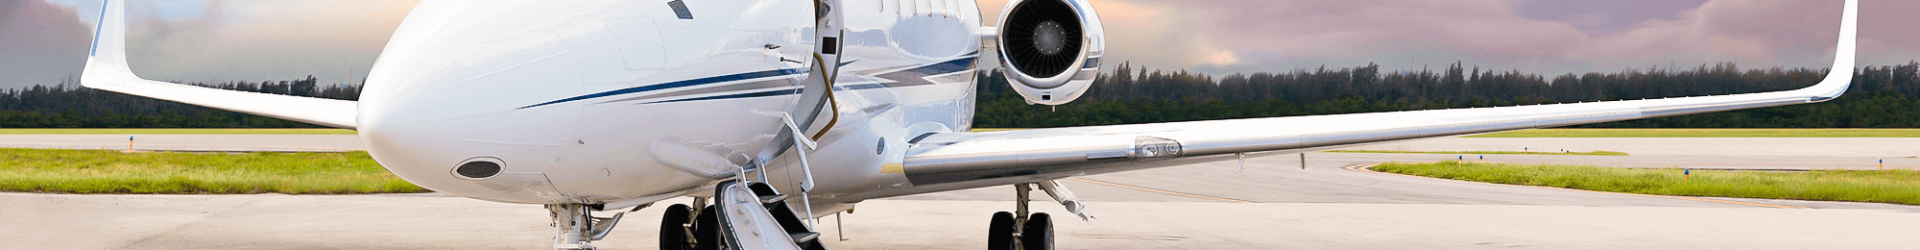 tahseen-private-air-charter